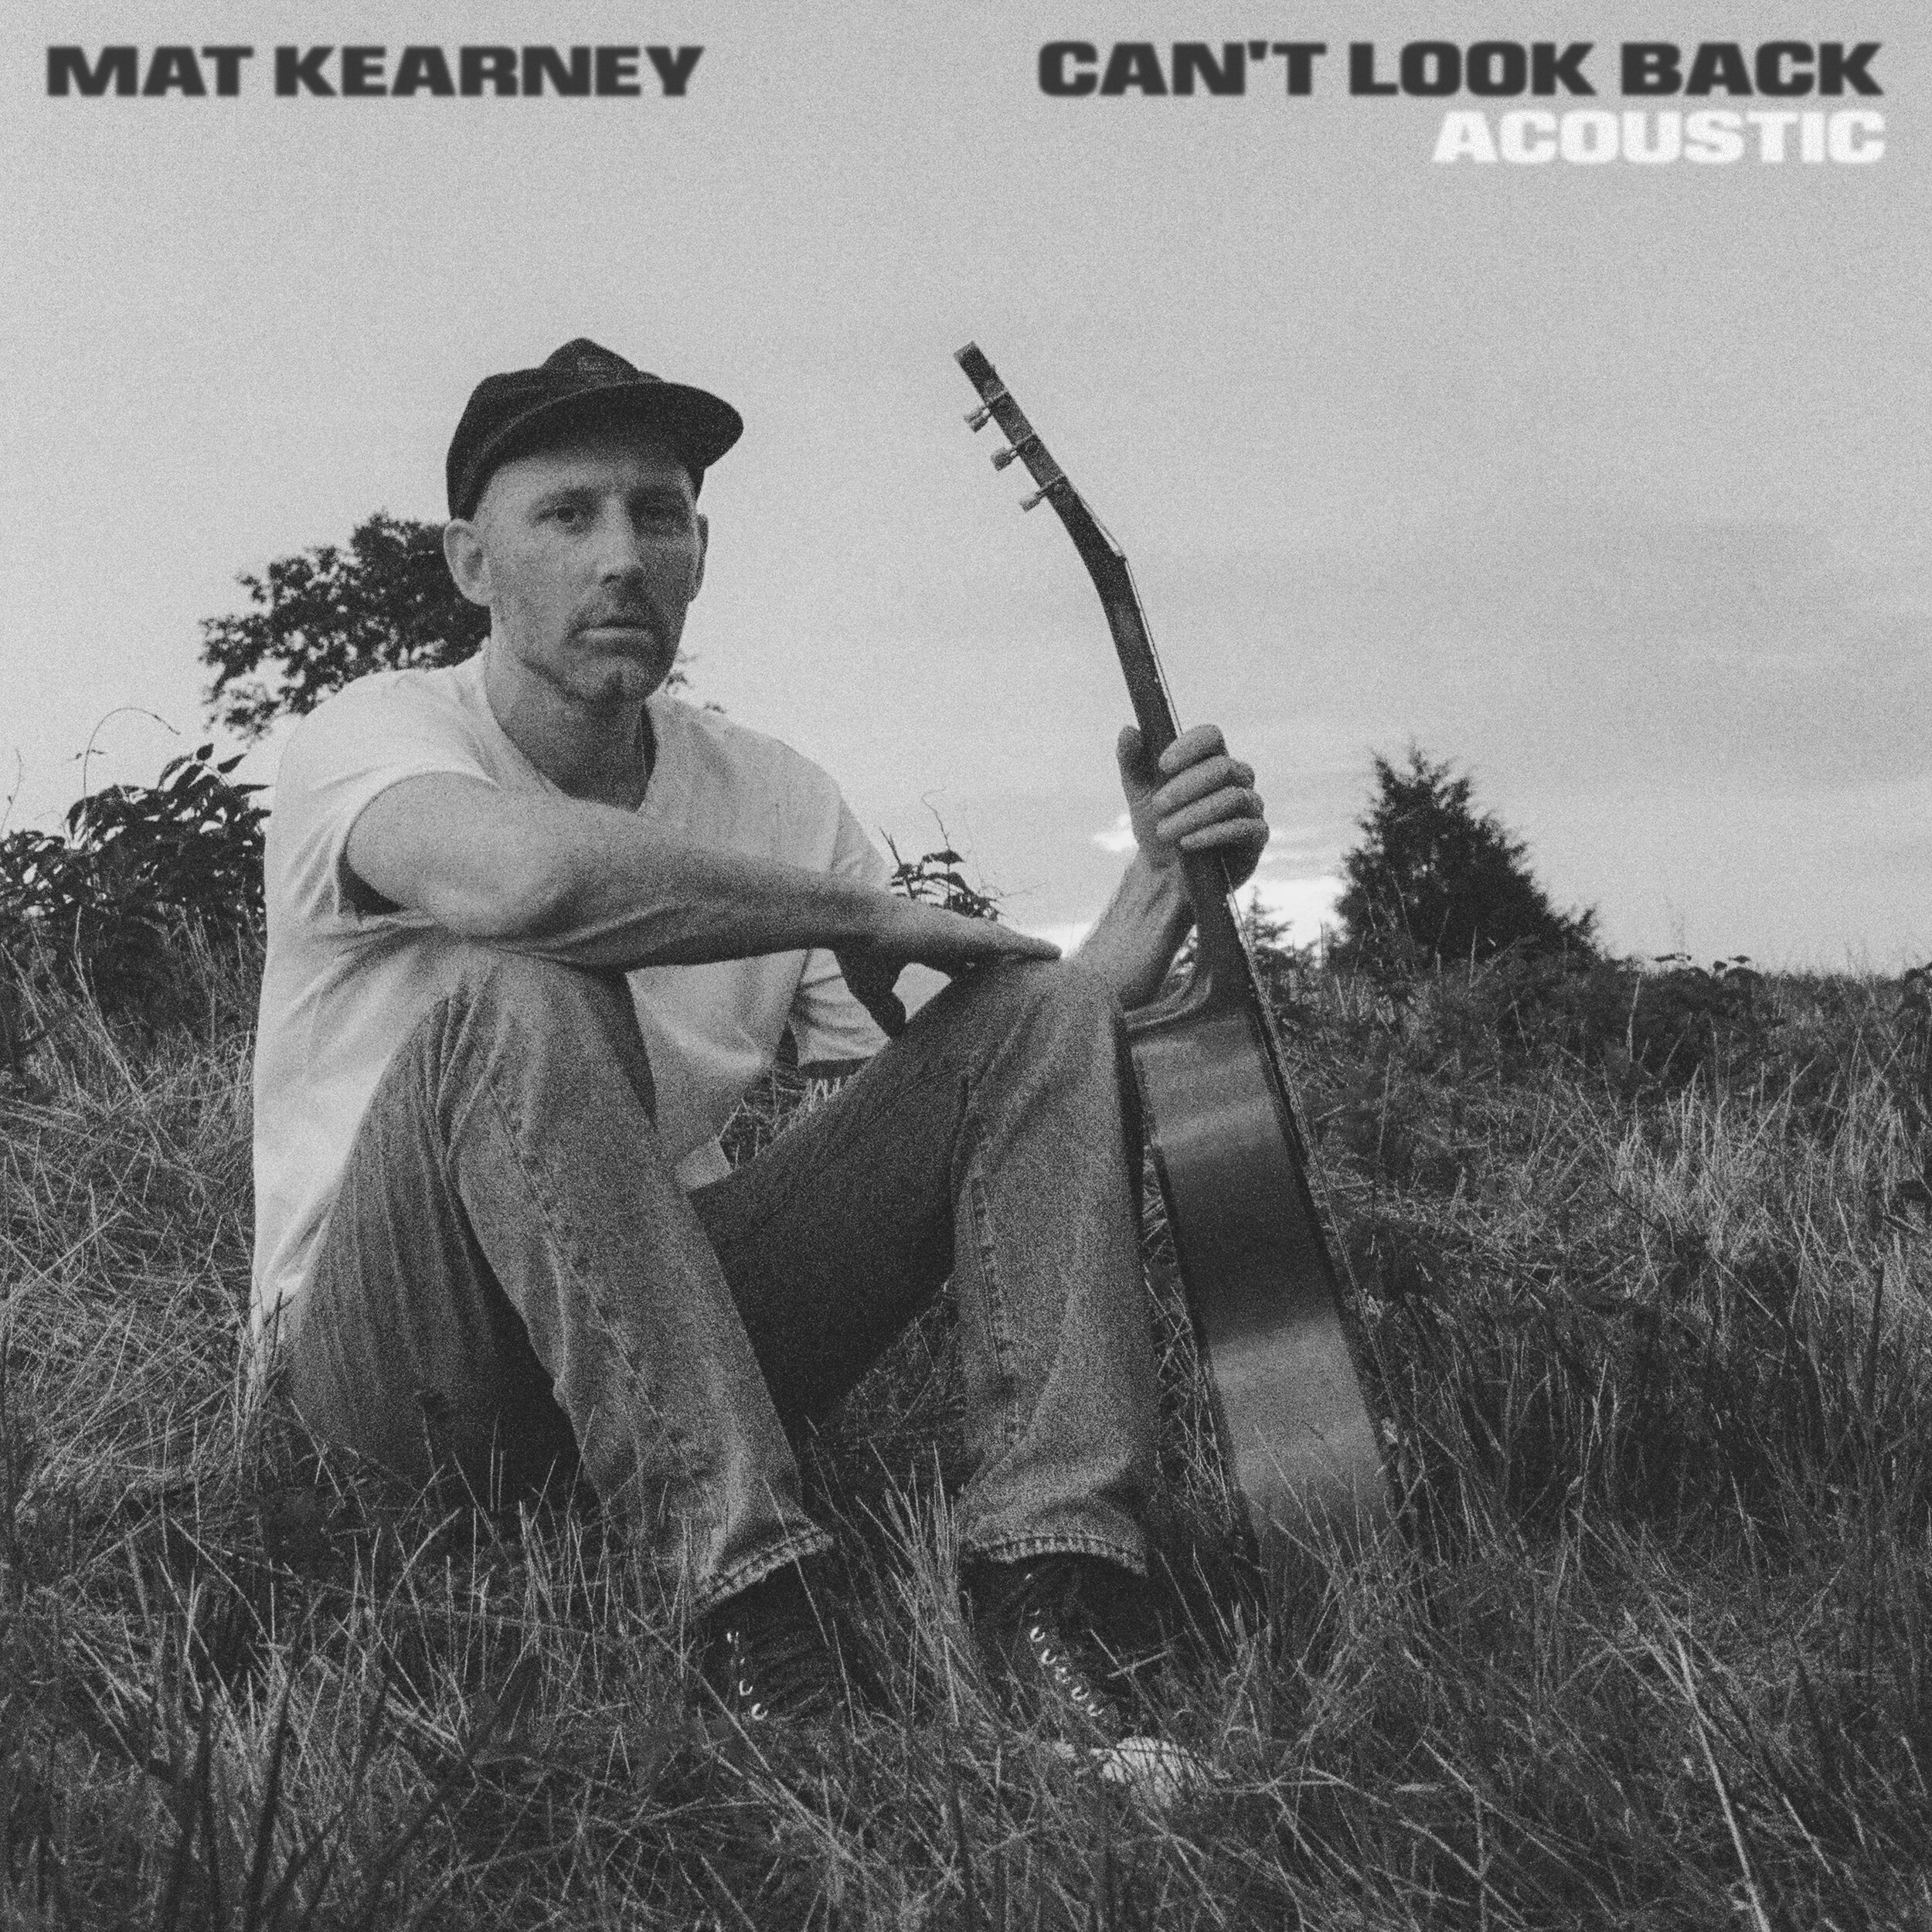 Mat Kearney - "Can't Look Back" (Acoustic) - Single